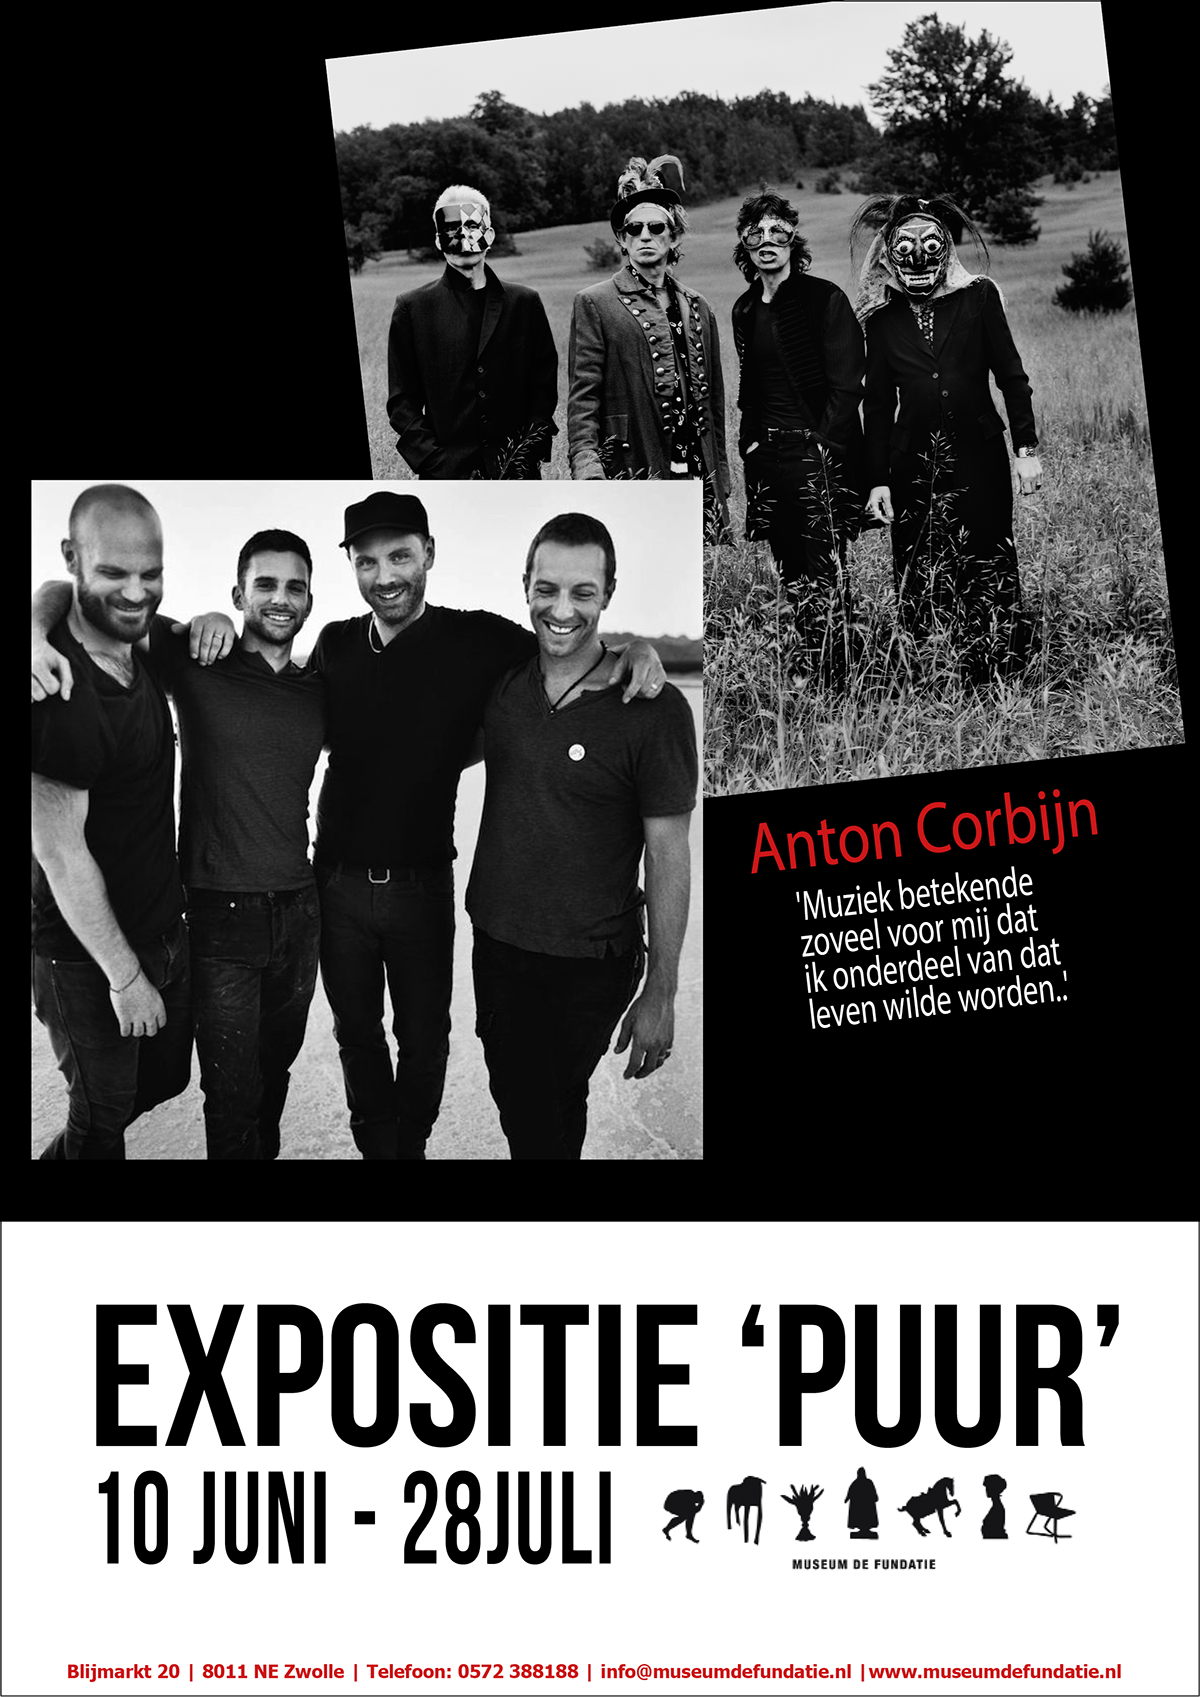 Anton Corbijn exhibition